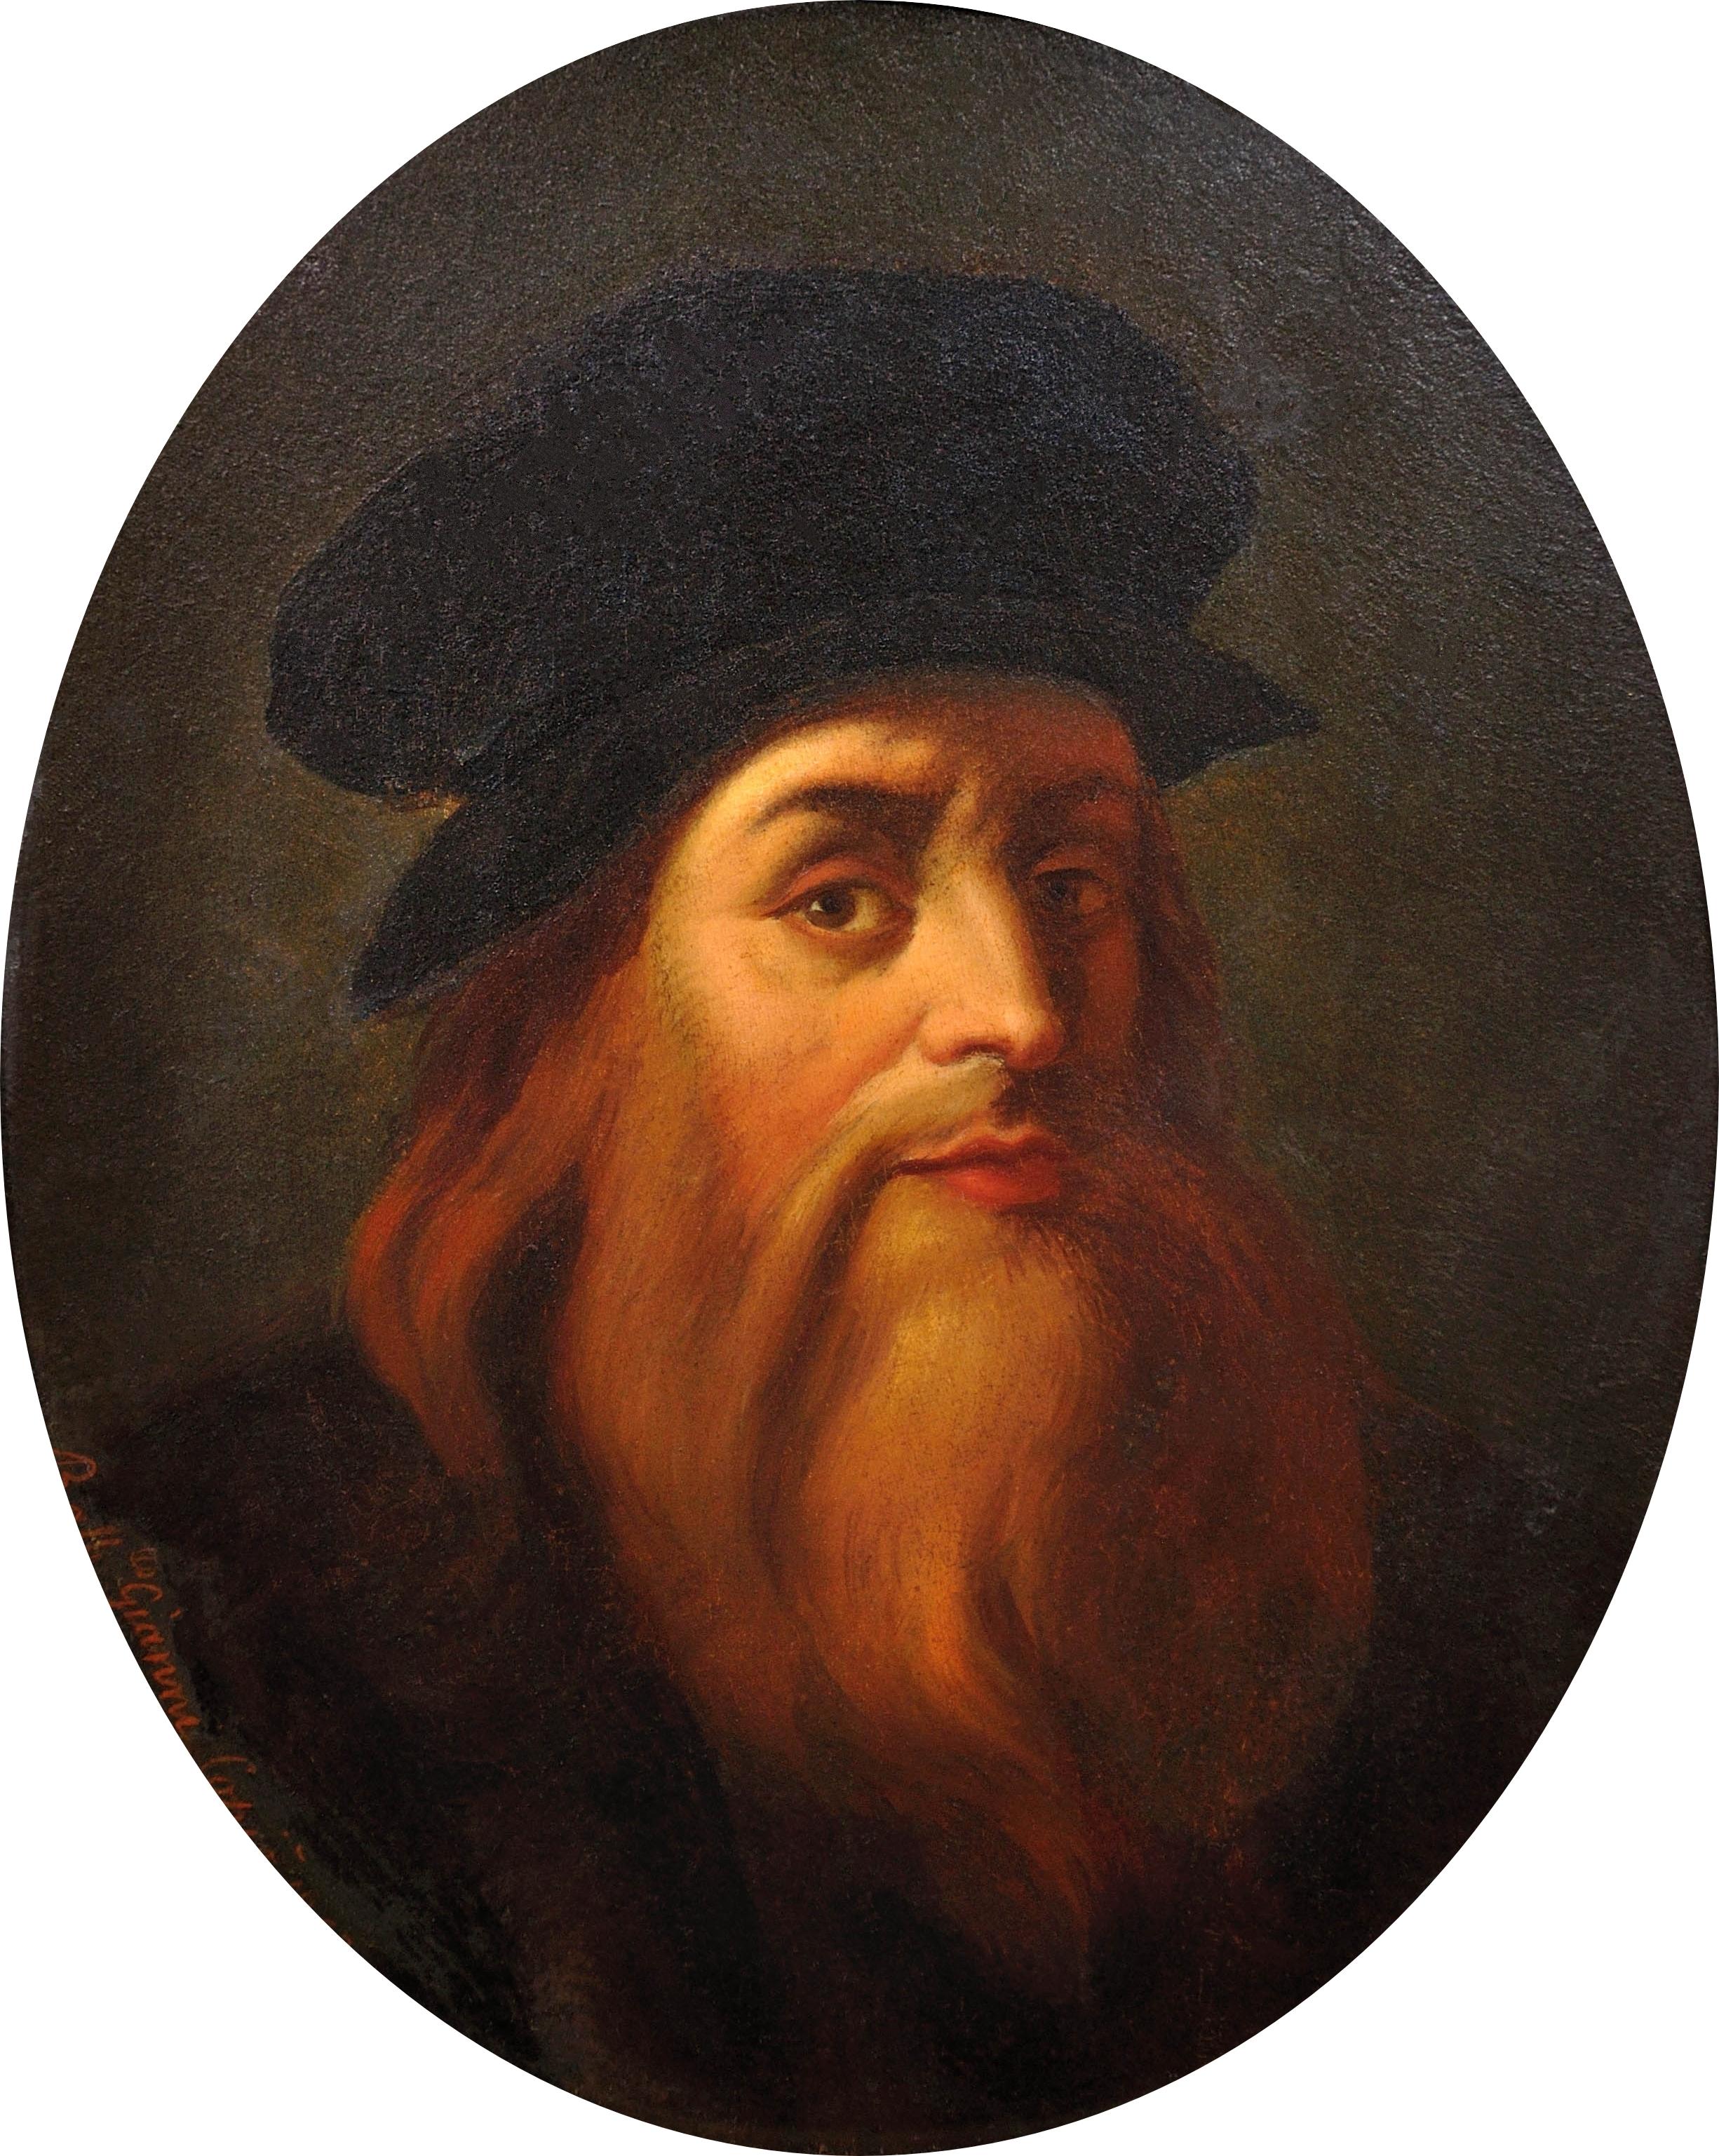 d'après Léonard de Vinci daté de 1863. Autoportrait. Galerie Uffizi à Florence. - Painting de Leonardo da Vinci